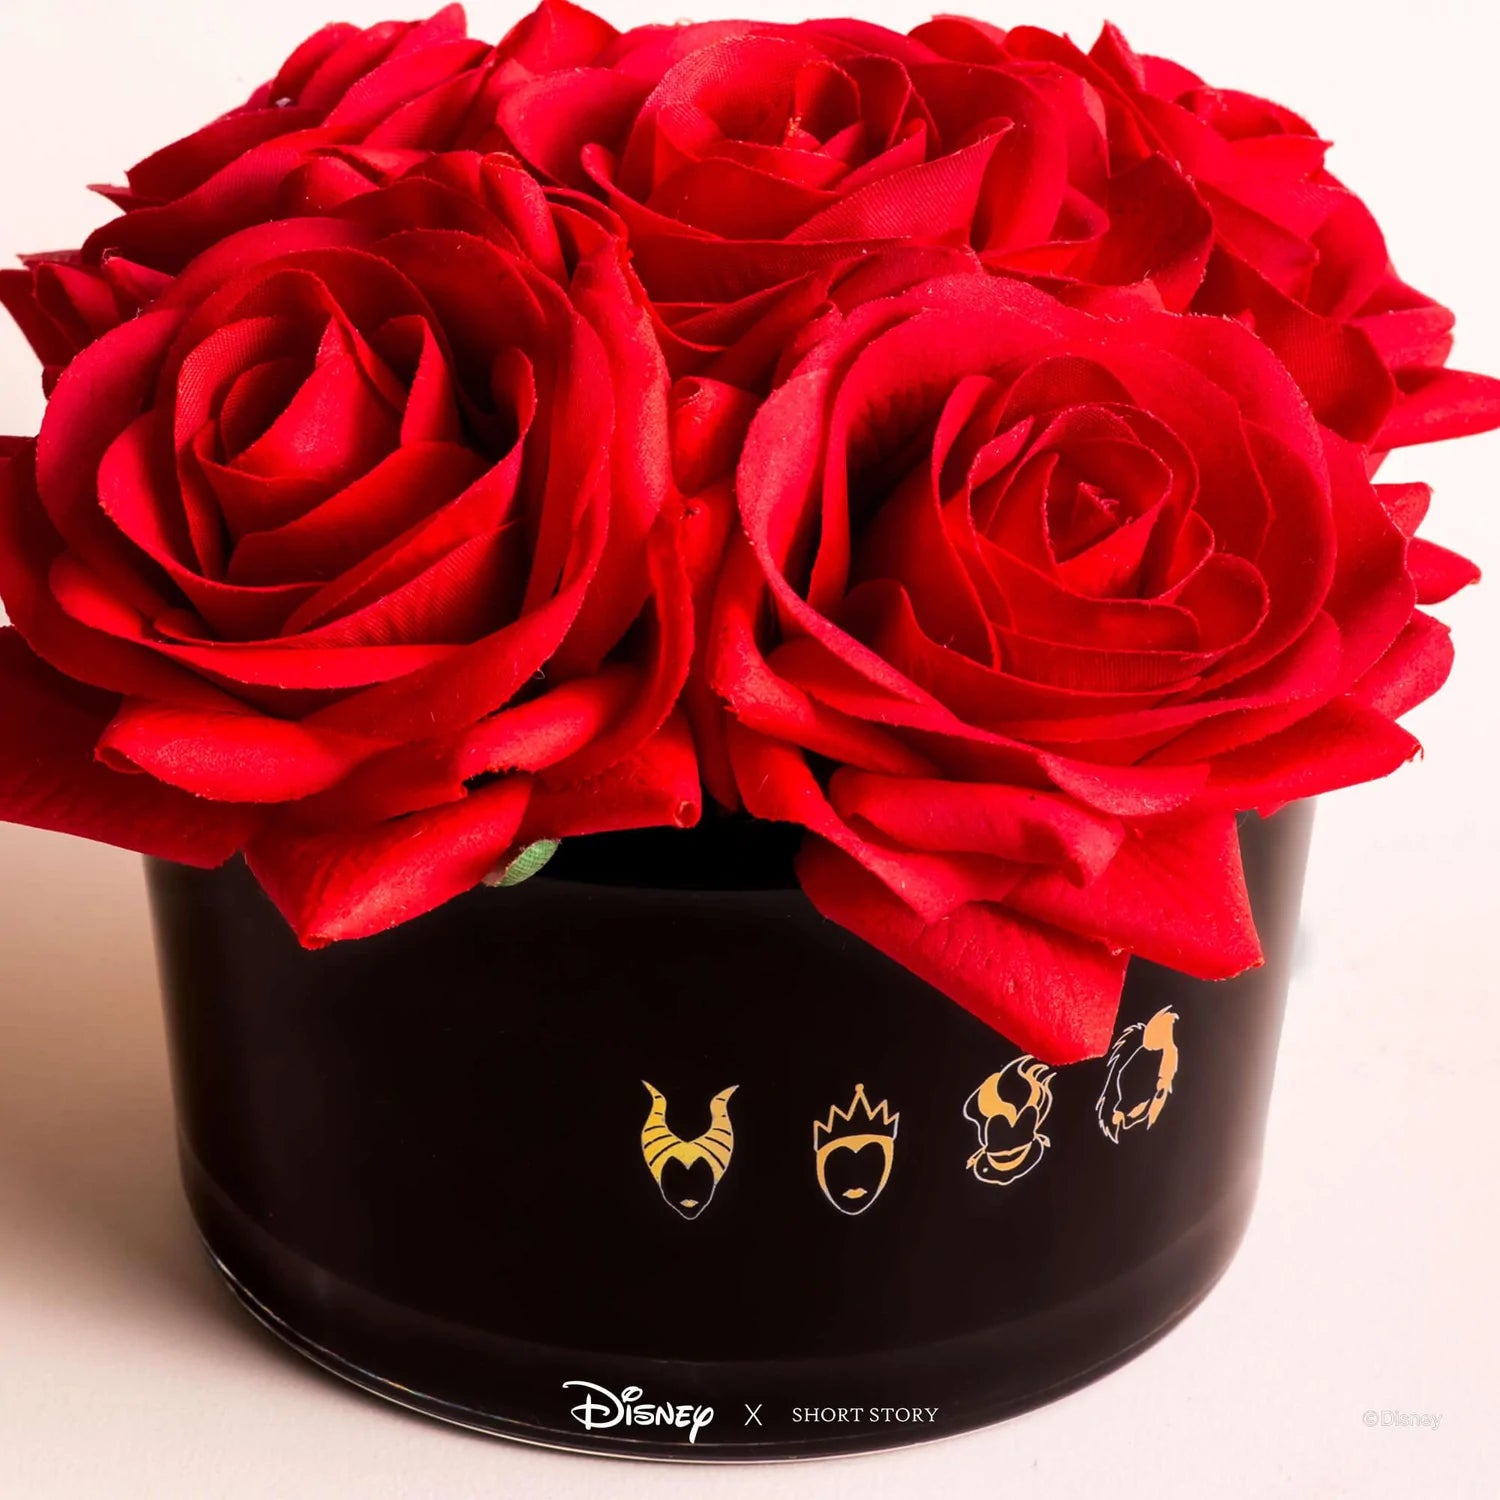 Short Story - Disney Diffuser Floral Bouquet Villains